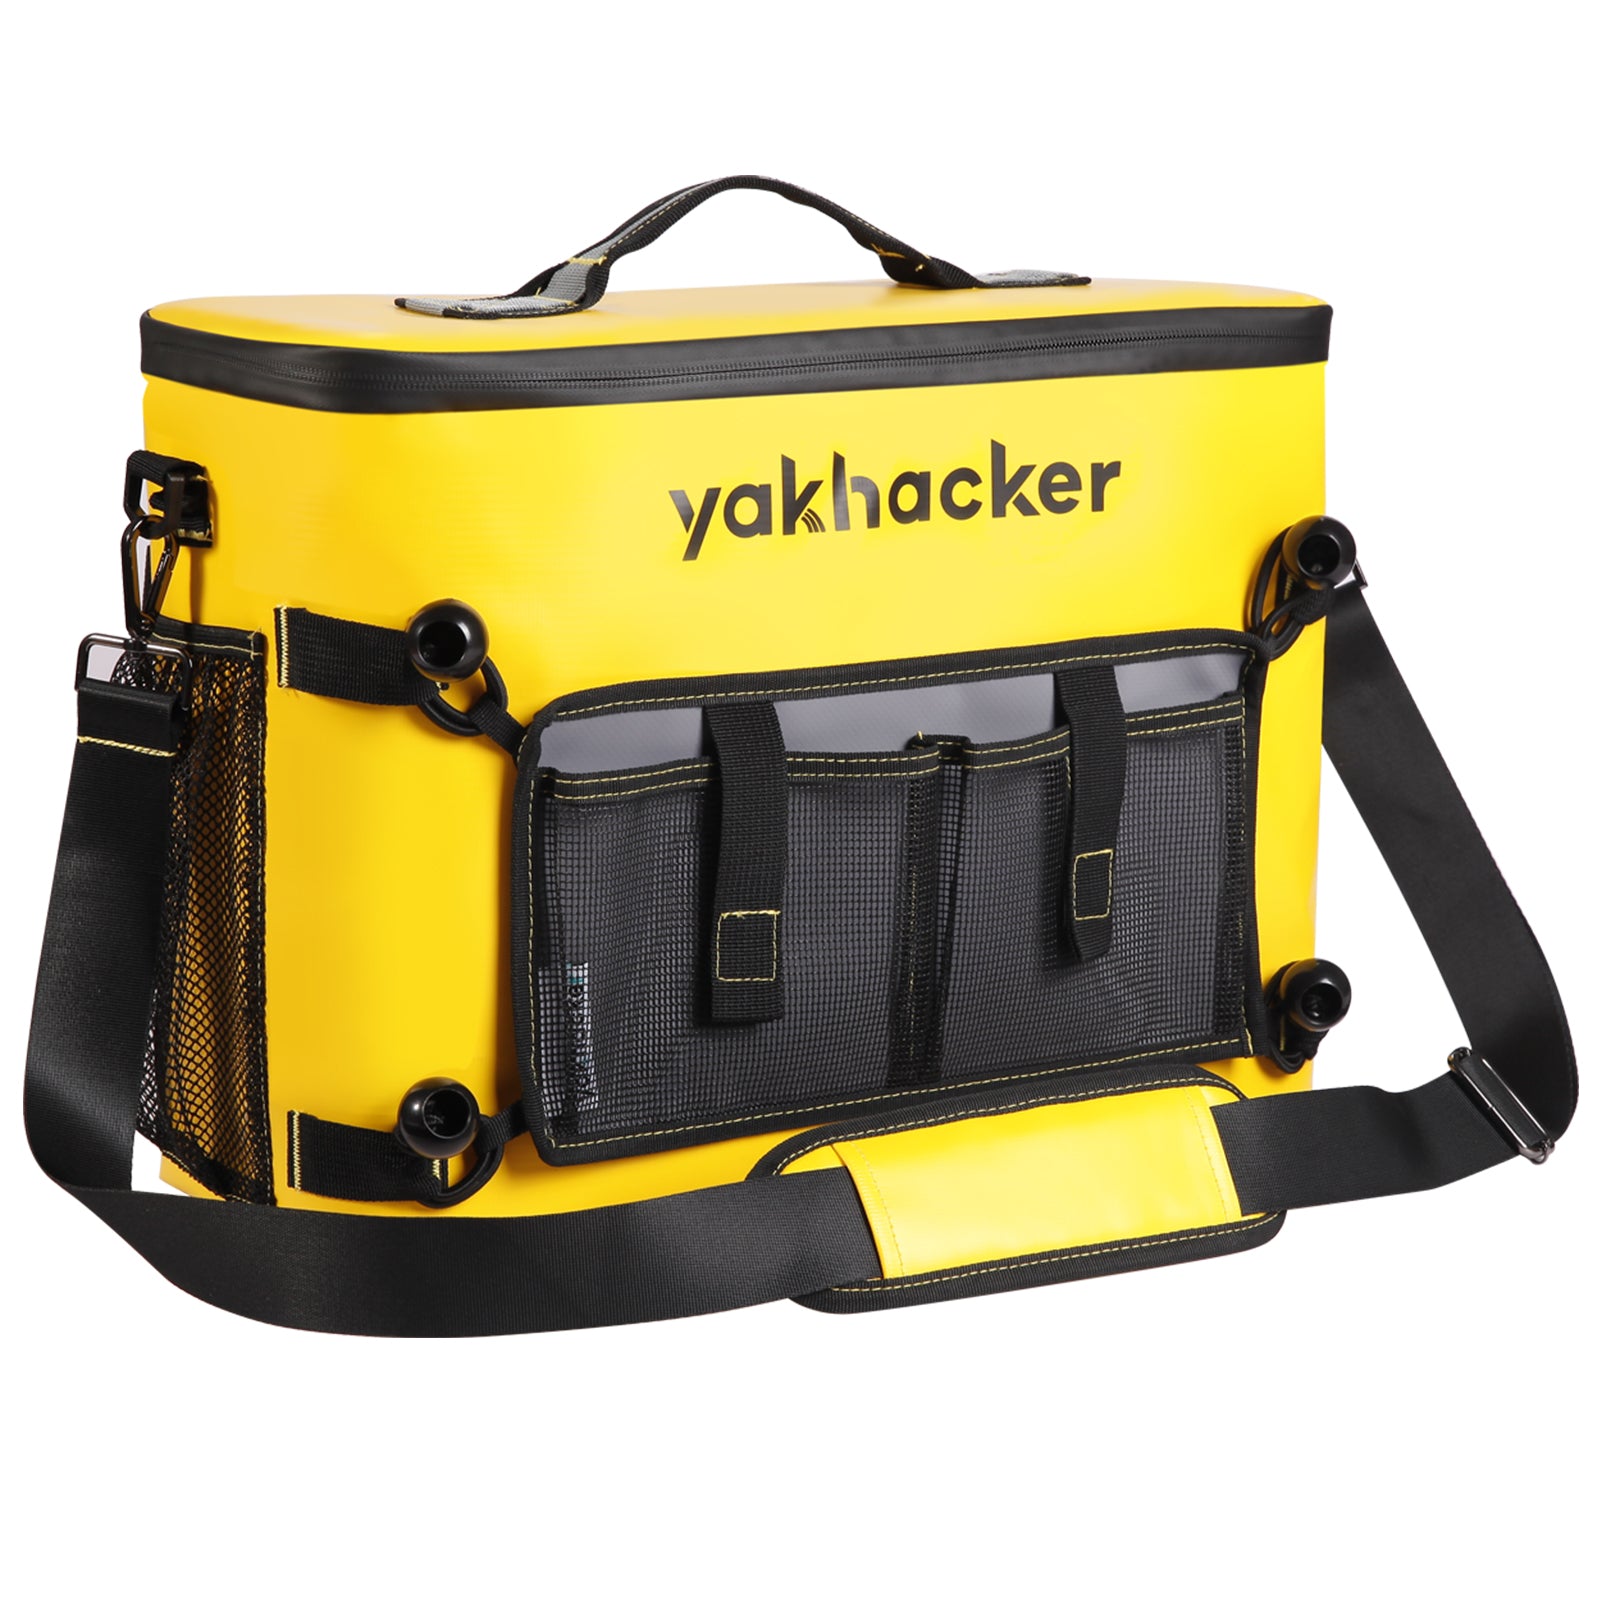 Kayak Cooler – Yakhacker